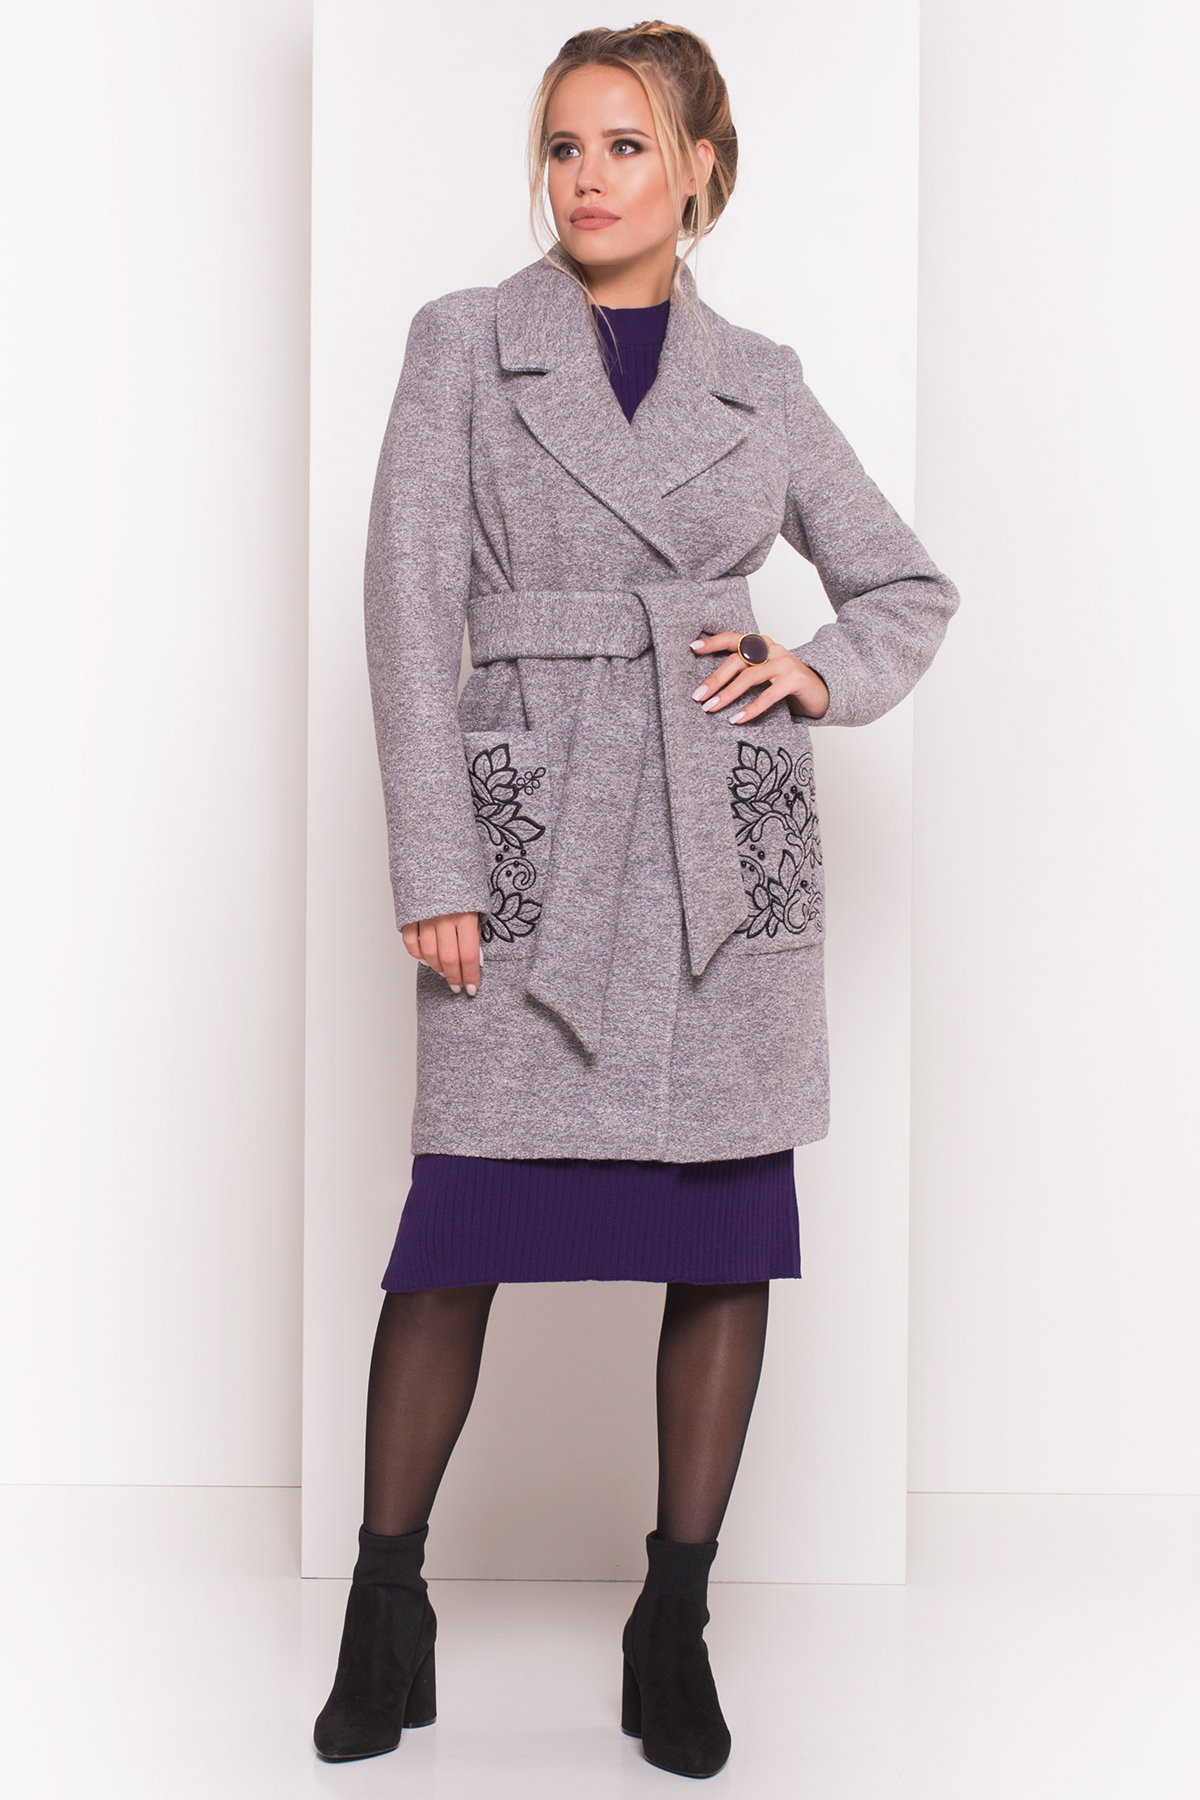 Купить пальто украинского производителя Modus Демисезонное пальто из варенной шерсти Милена 5273